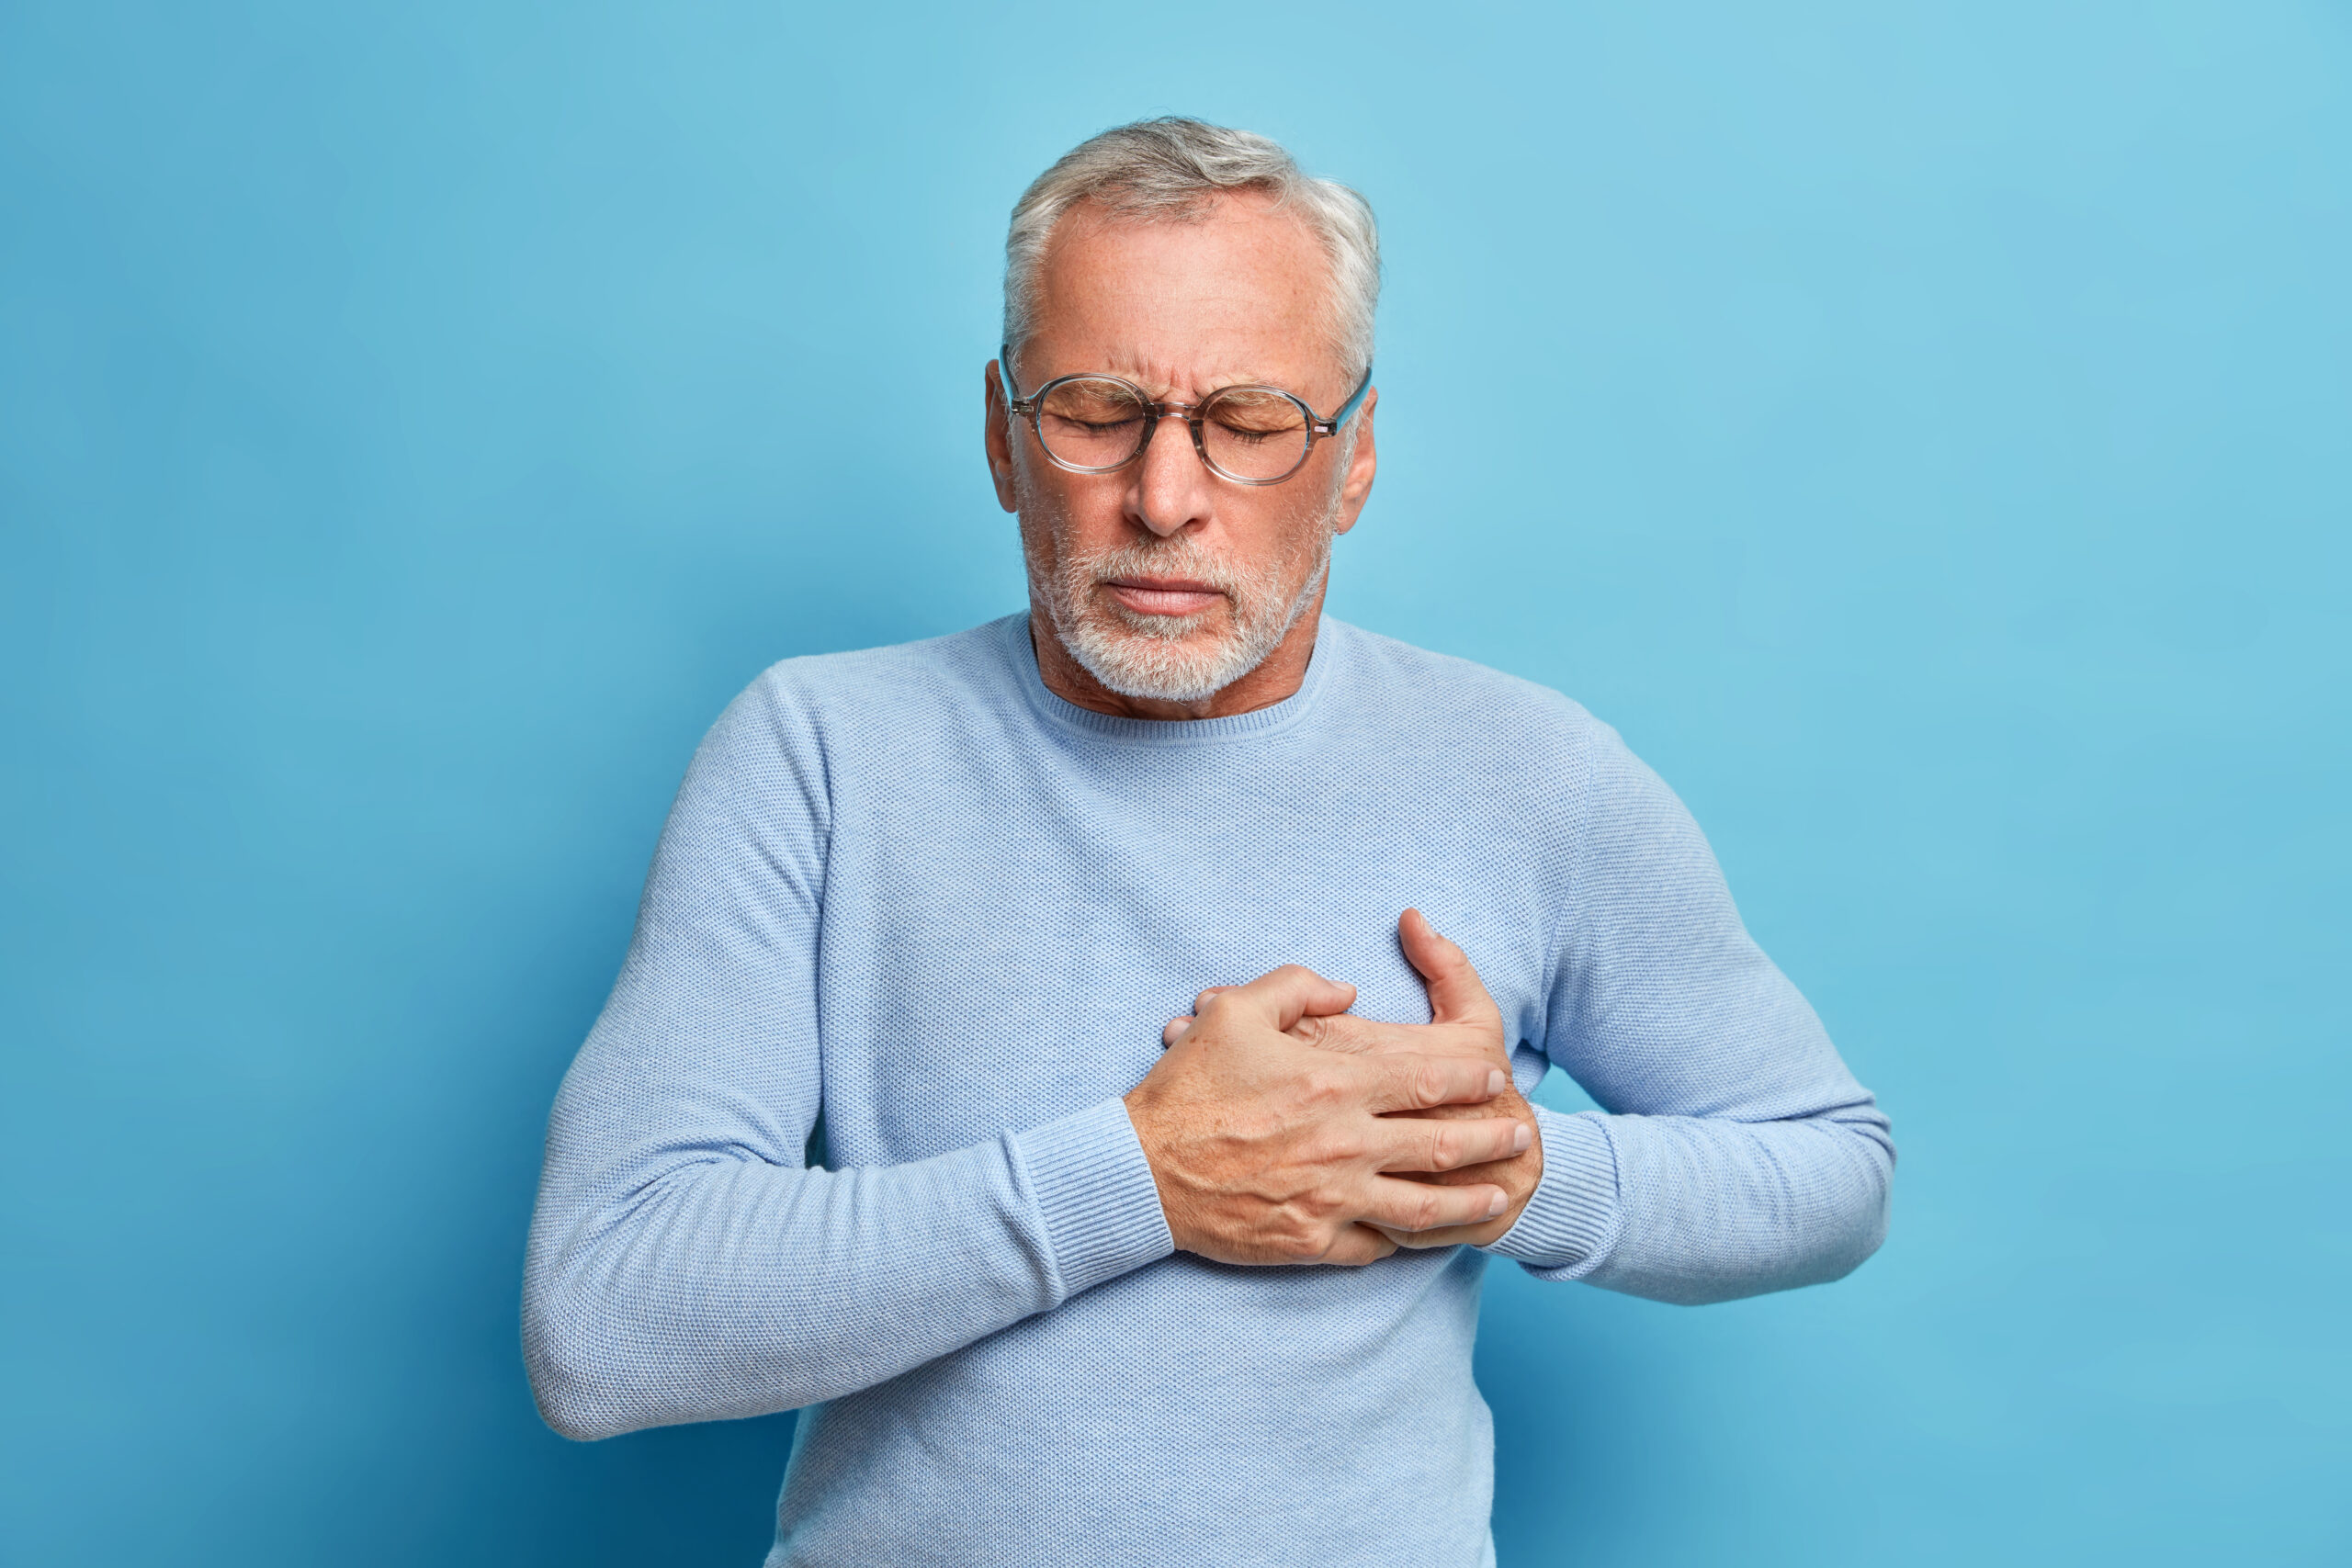 Un suflu sistolic mare este semnul clar al unei boli cardiace grave - fond-suflu-sistolicjpg-2-1702816263.jpg